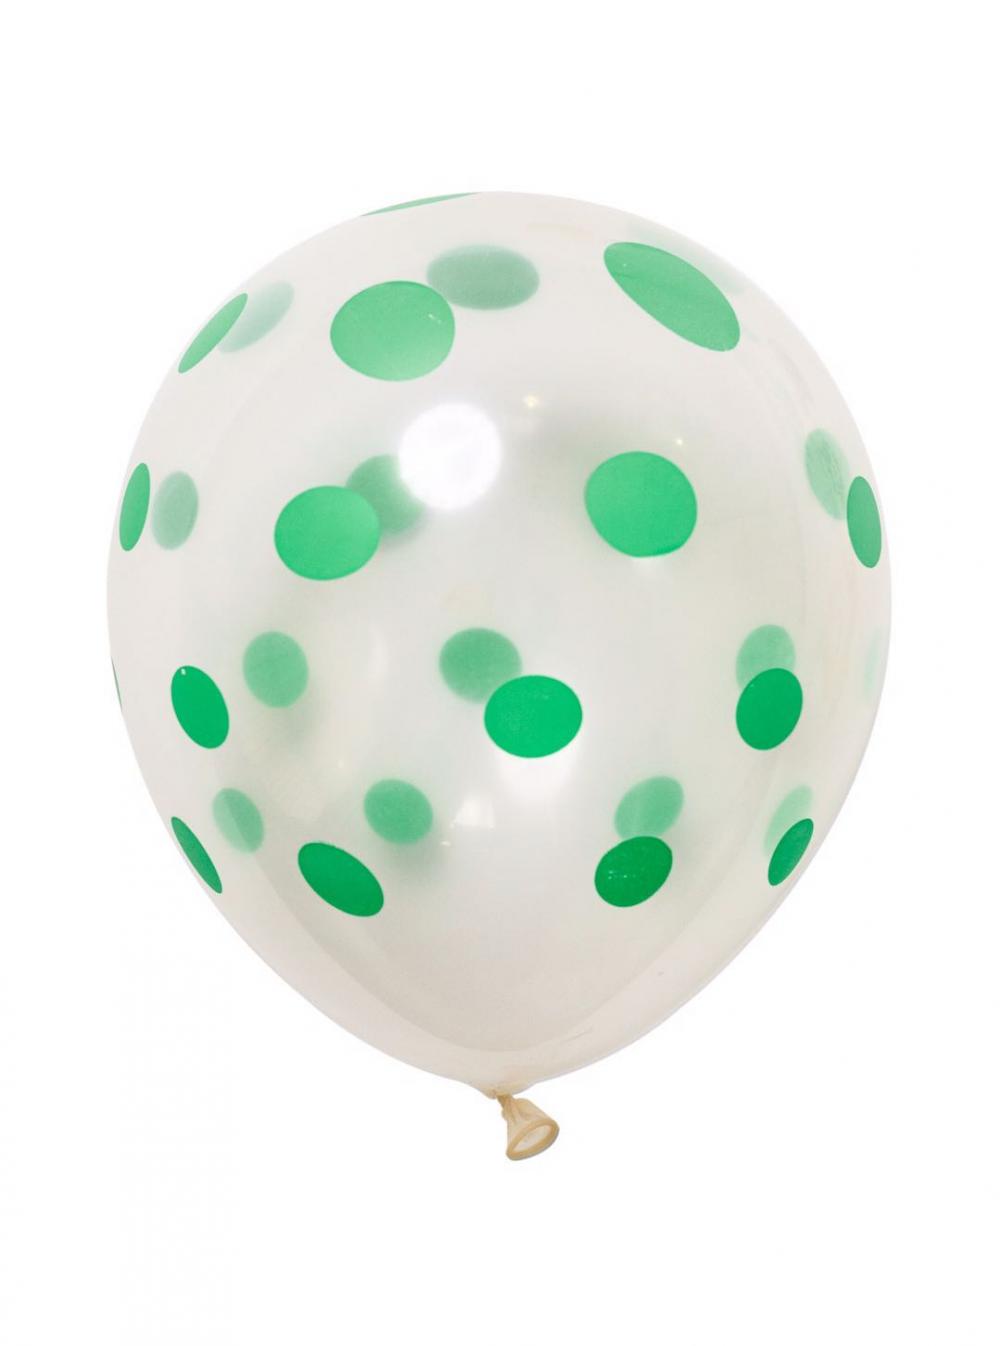 12 Inch Standard Polka Dot Balloons Clear Balloon Green Dot (100PCS)